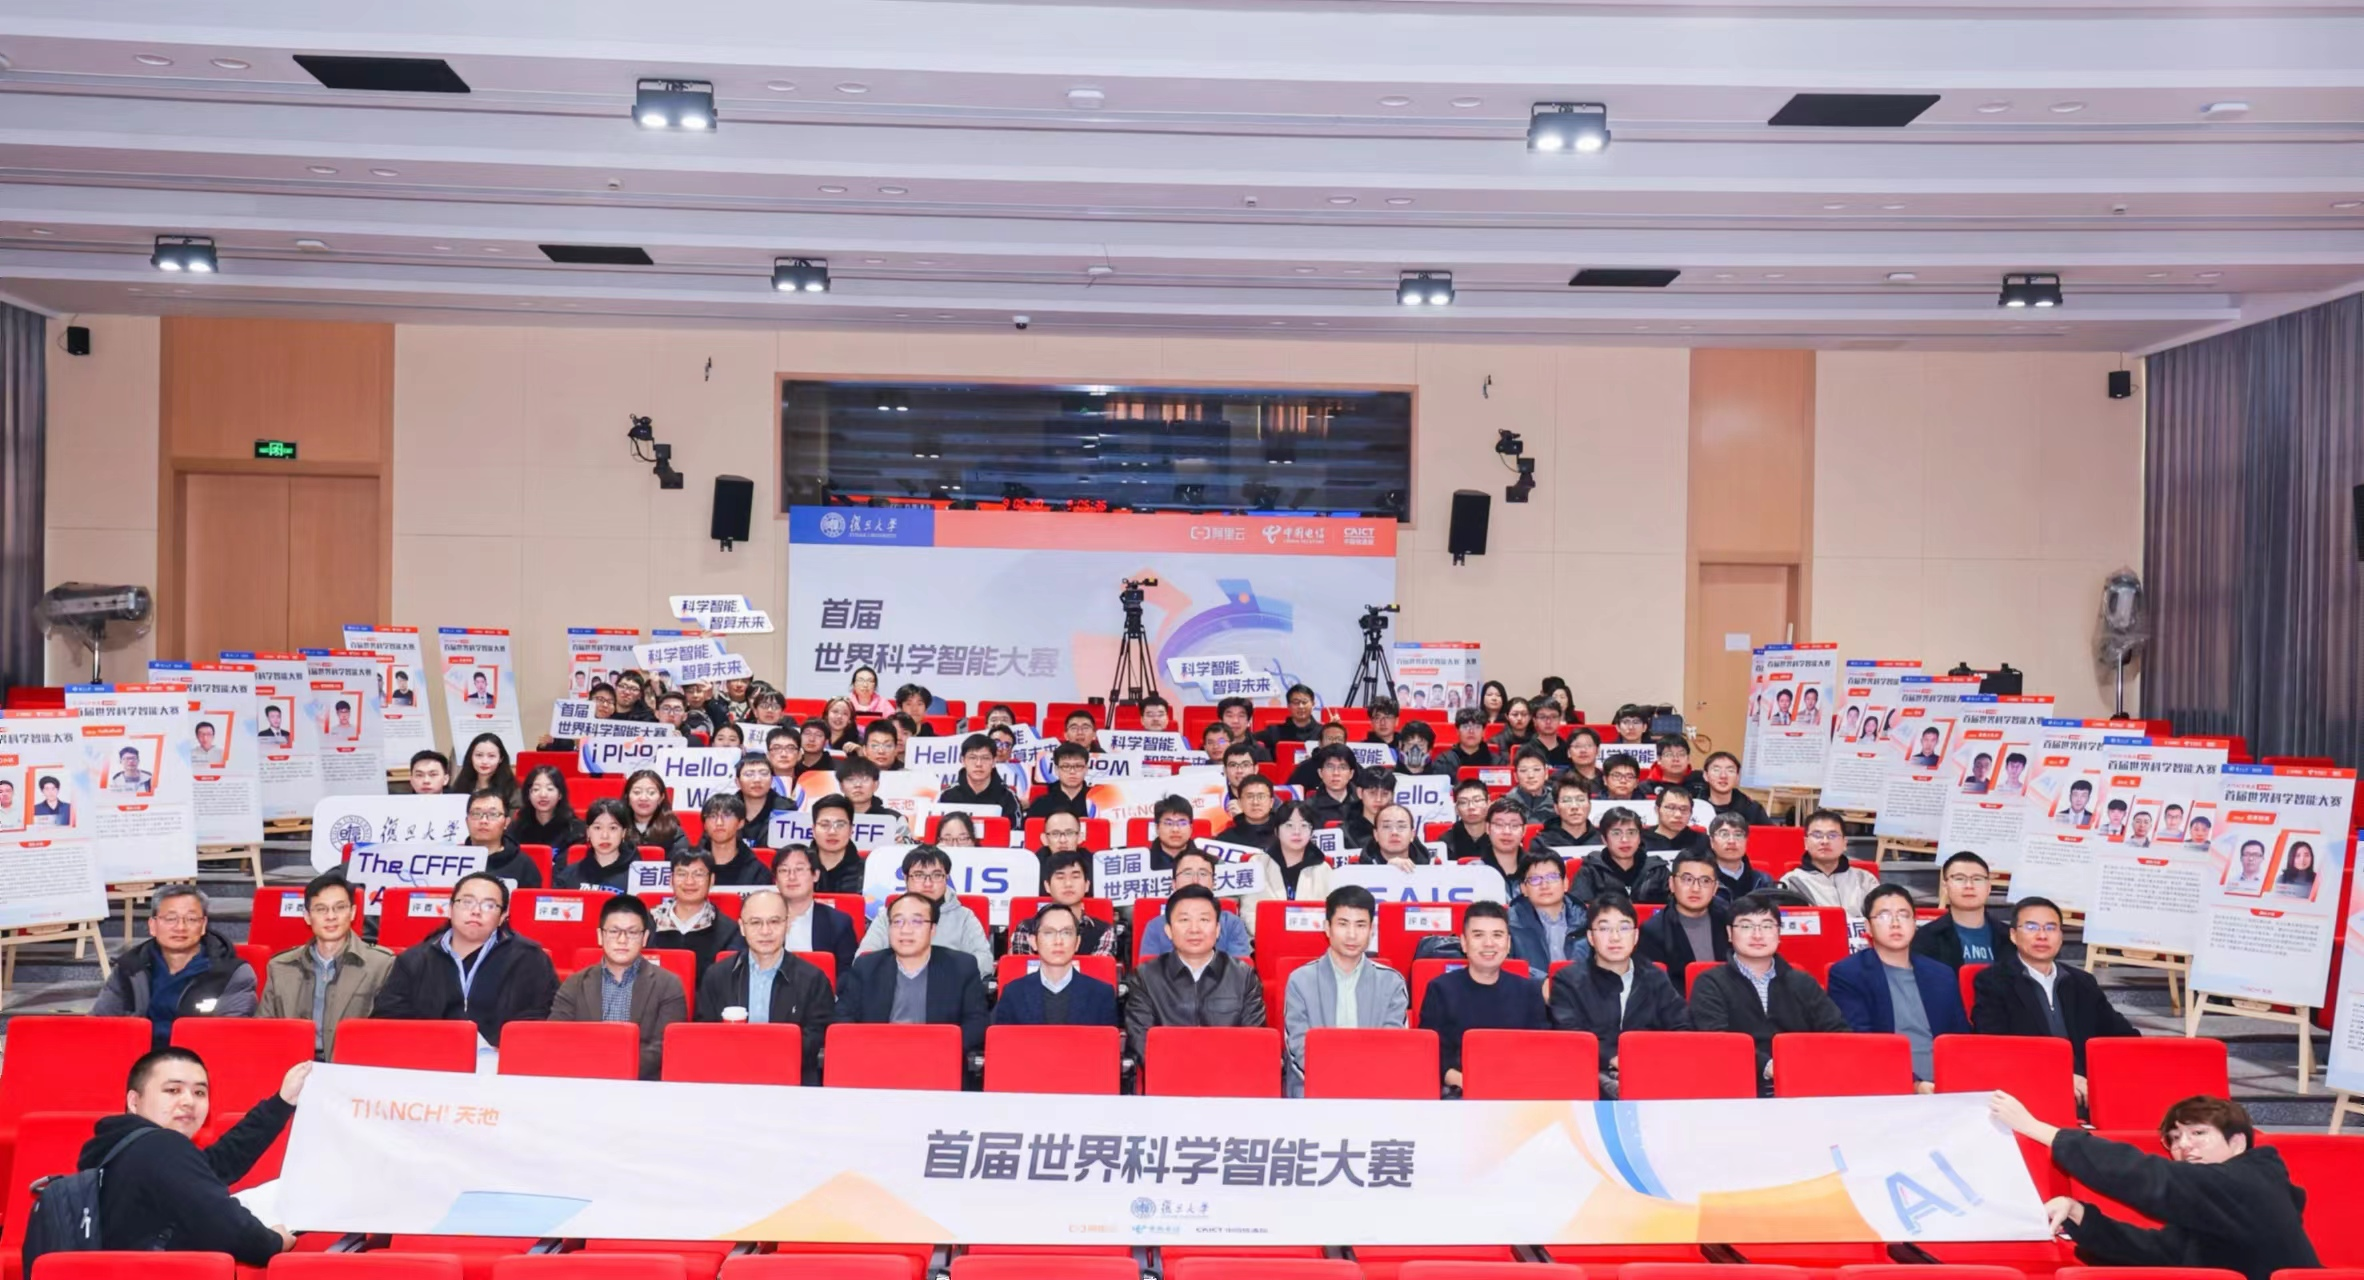 中国气象科学研究院人工智能气象应用创新团队在首届世界科学智能大赛上喜获佳绩